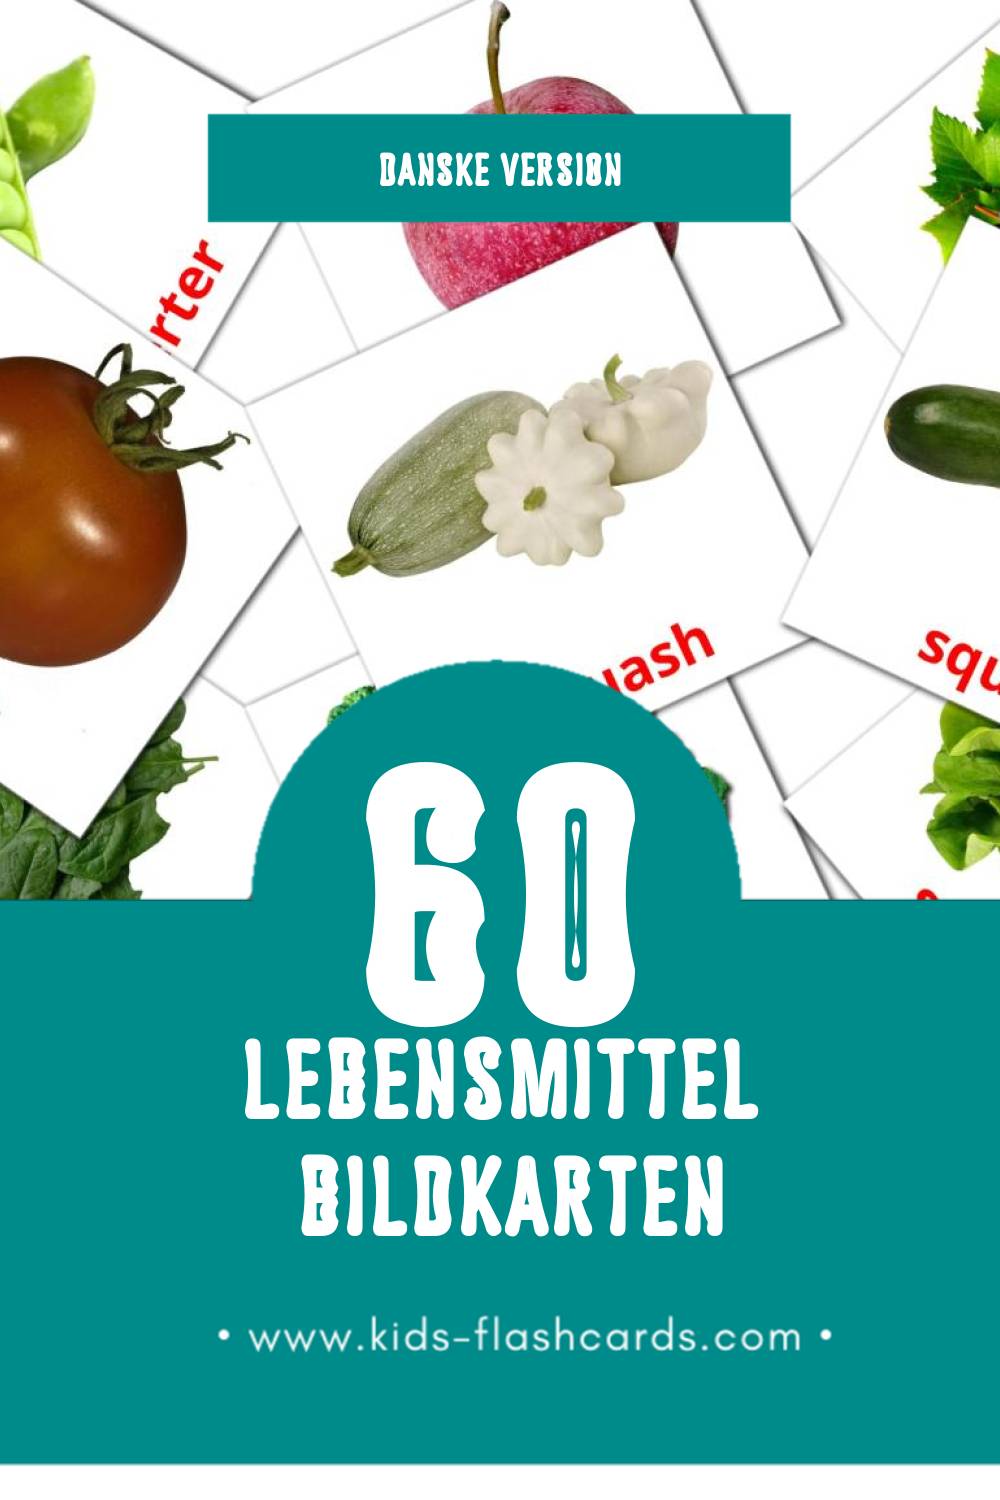 Visual Mad Flashcards für Kleinkinder (60 Karten in Dansk)